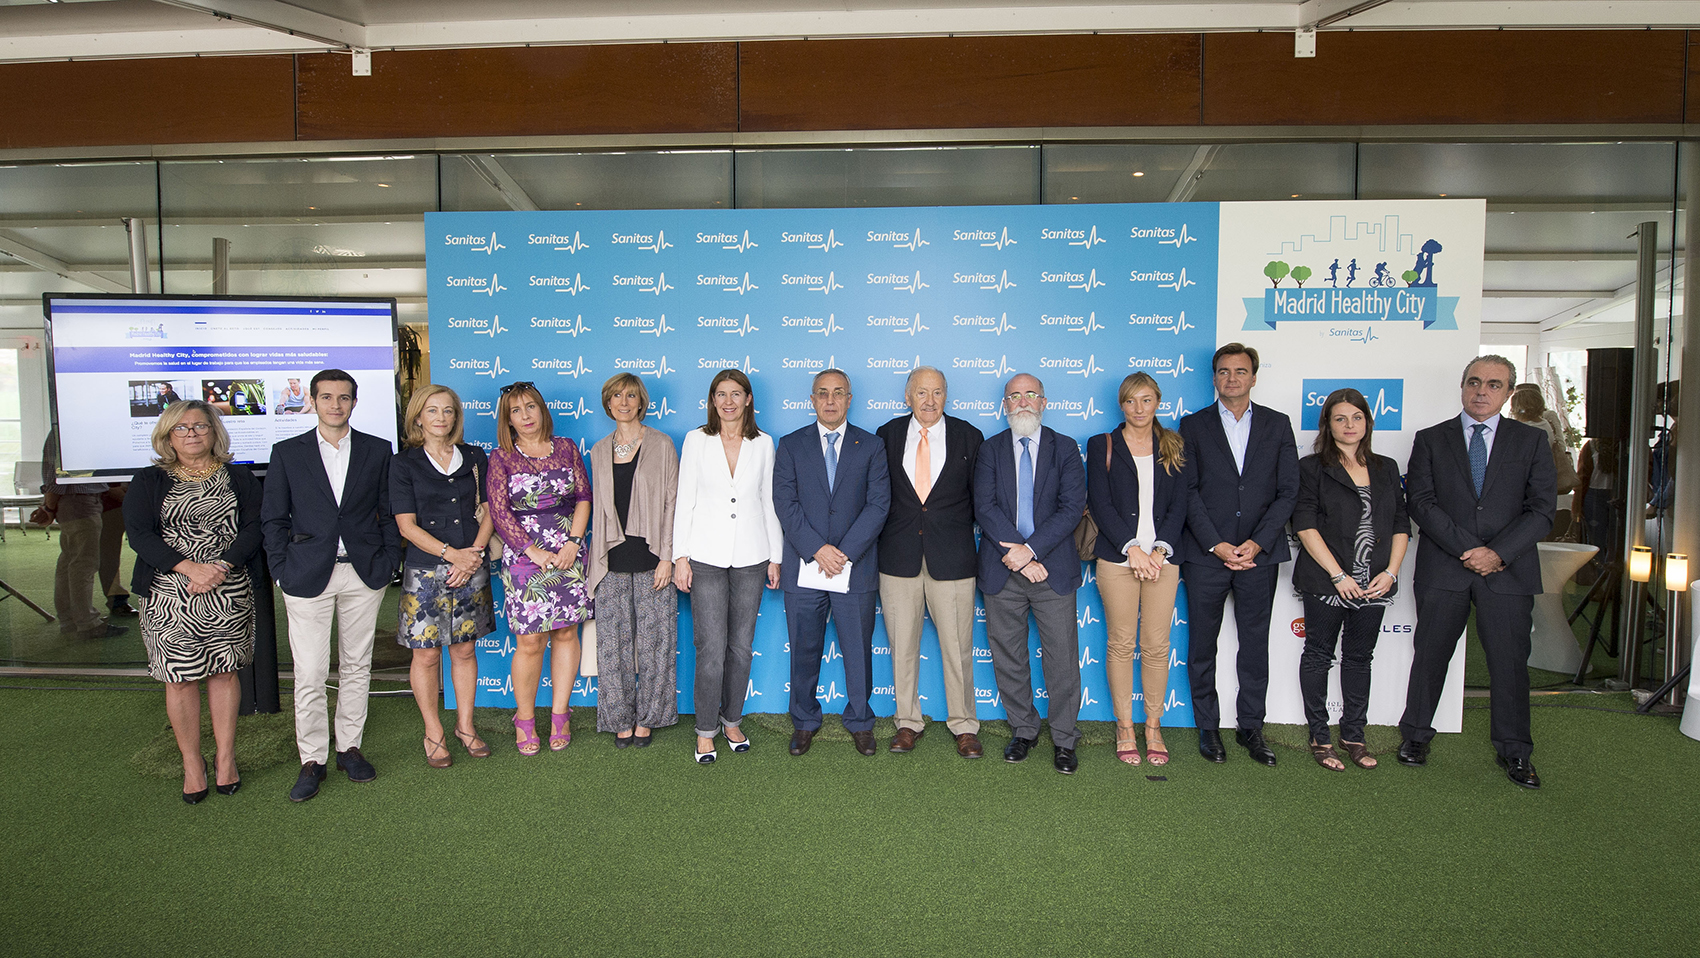 Representantes de todas las empresas participantes en Madrid Healthy City